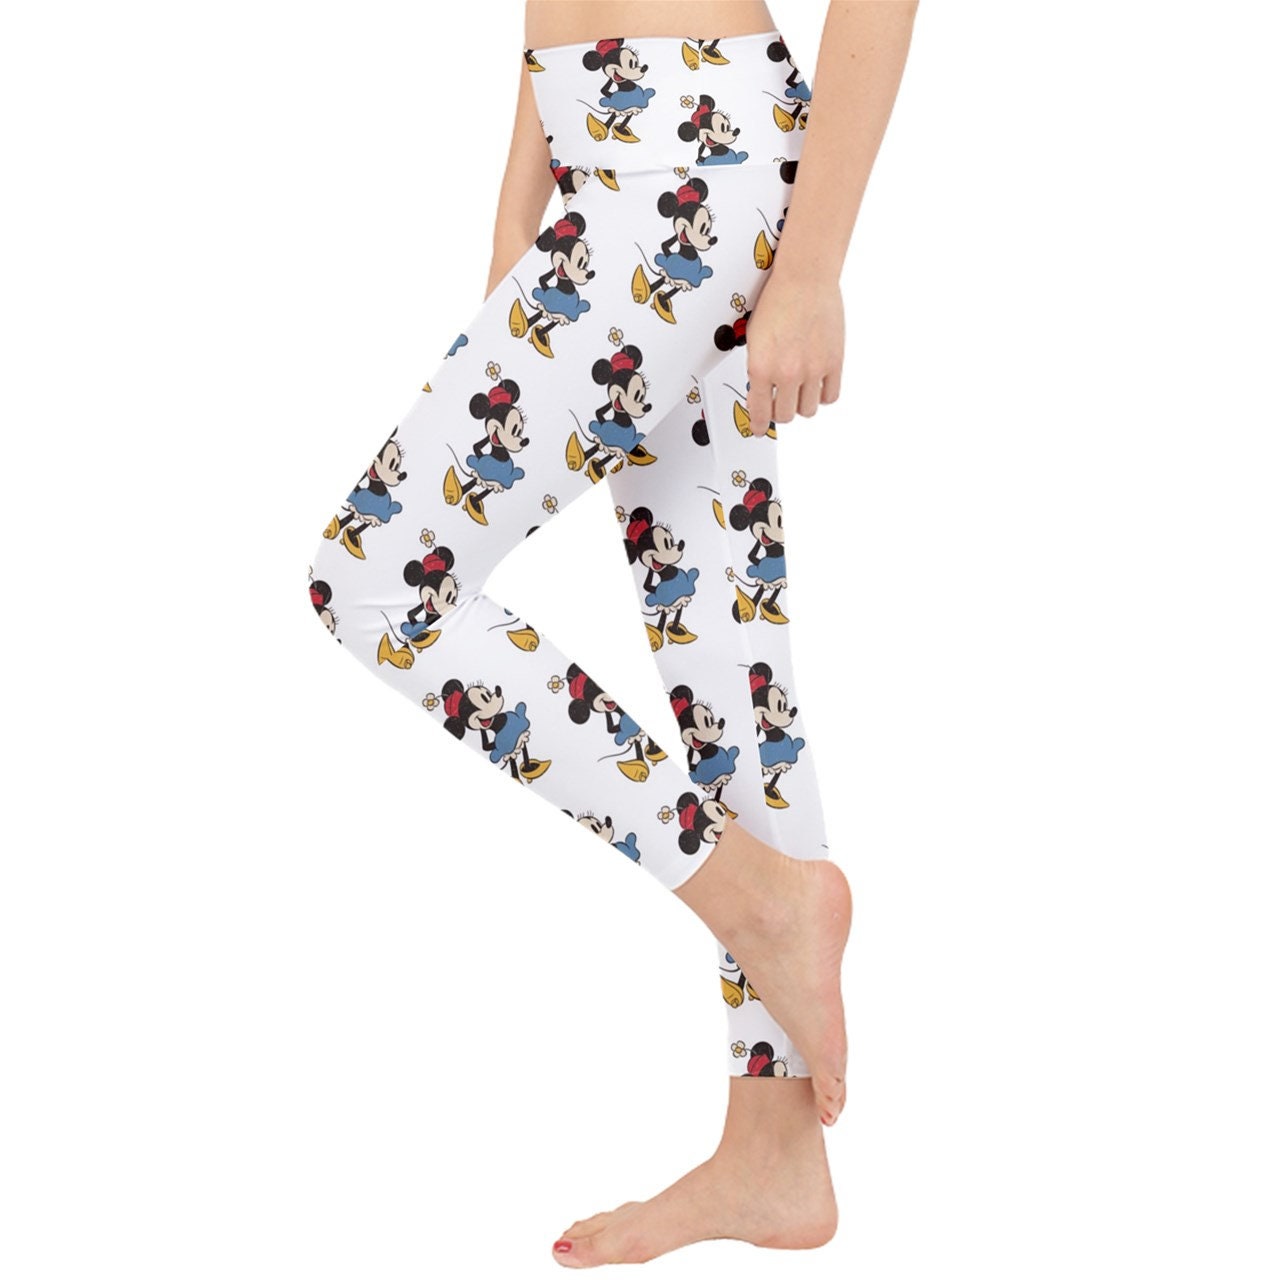 Buy Krystle Girls Disney Blue Skinny Printed Denim Jegging Leggings Pants  For Age 4-5 Years at Amazon.in